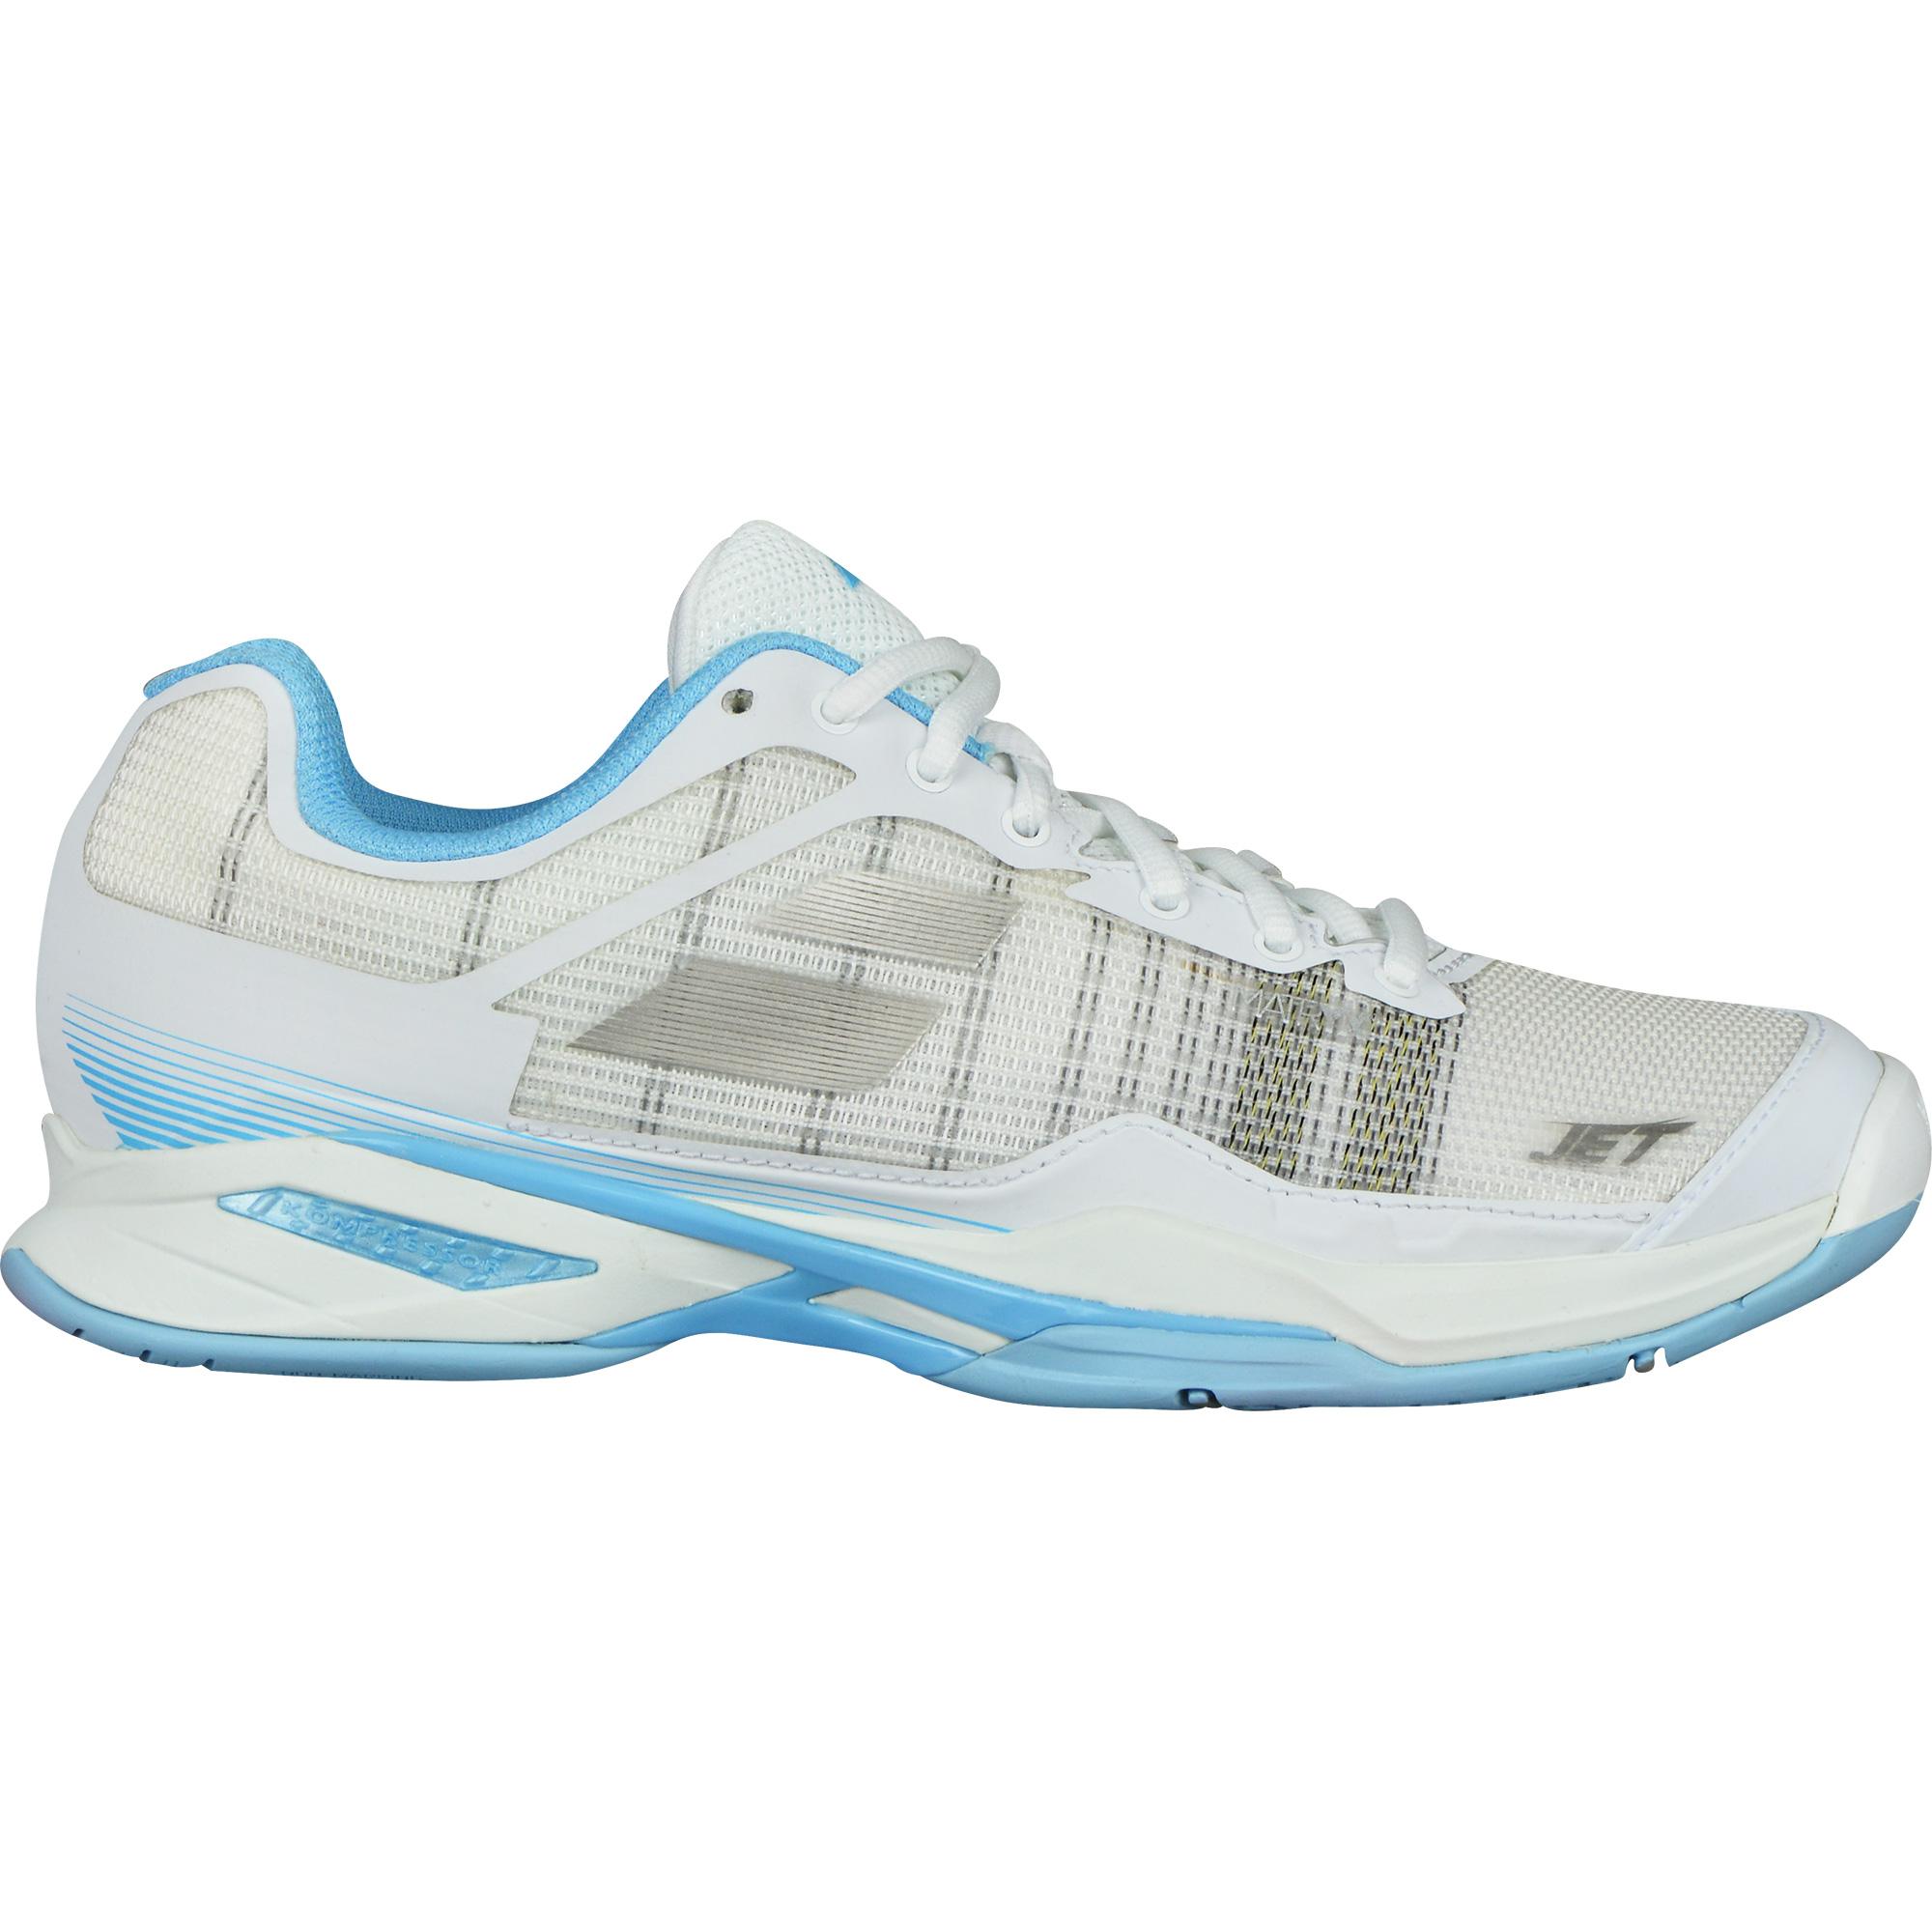 Babolat Womens Jet Mach I Tennis Shoes - White/Sky Blue - Tennisnuts.com